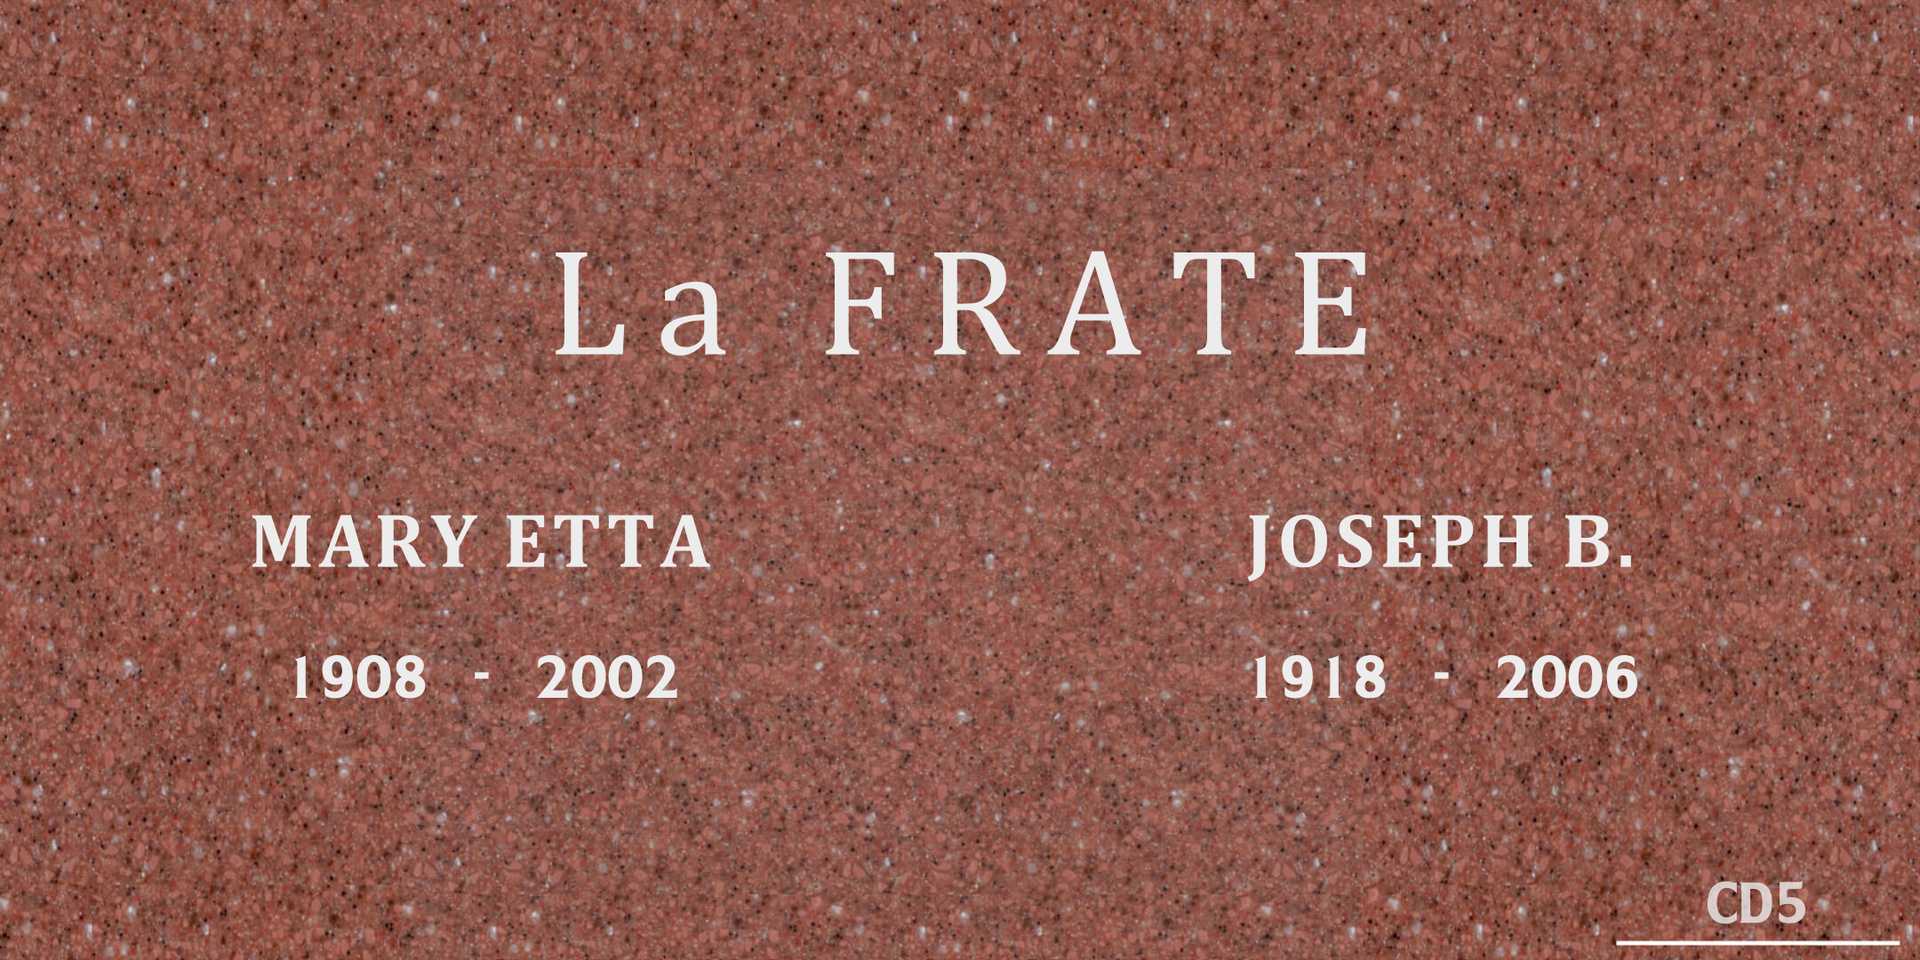 Joseph B. La Frate's grave